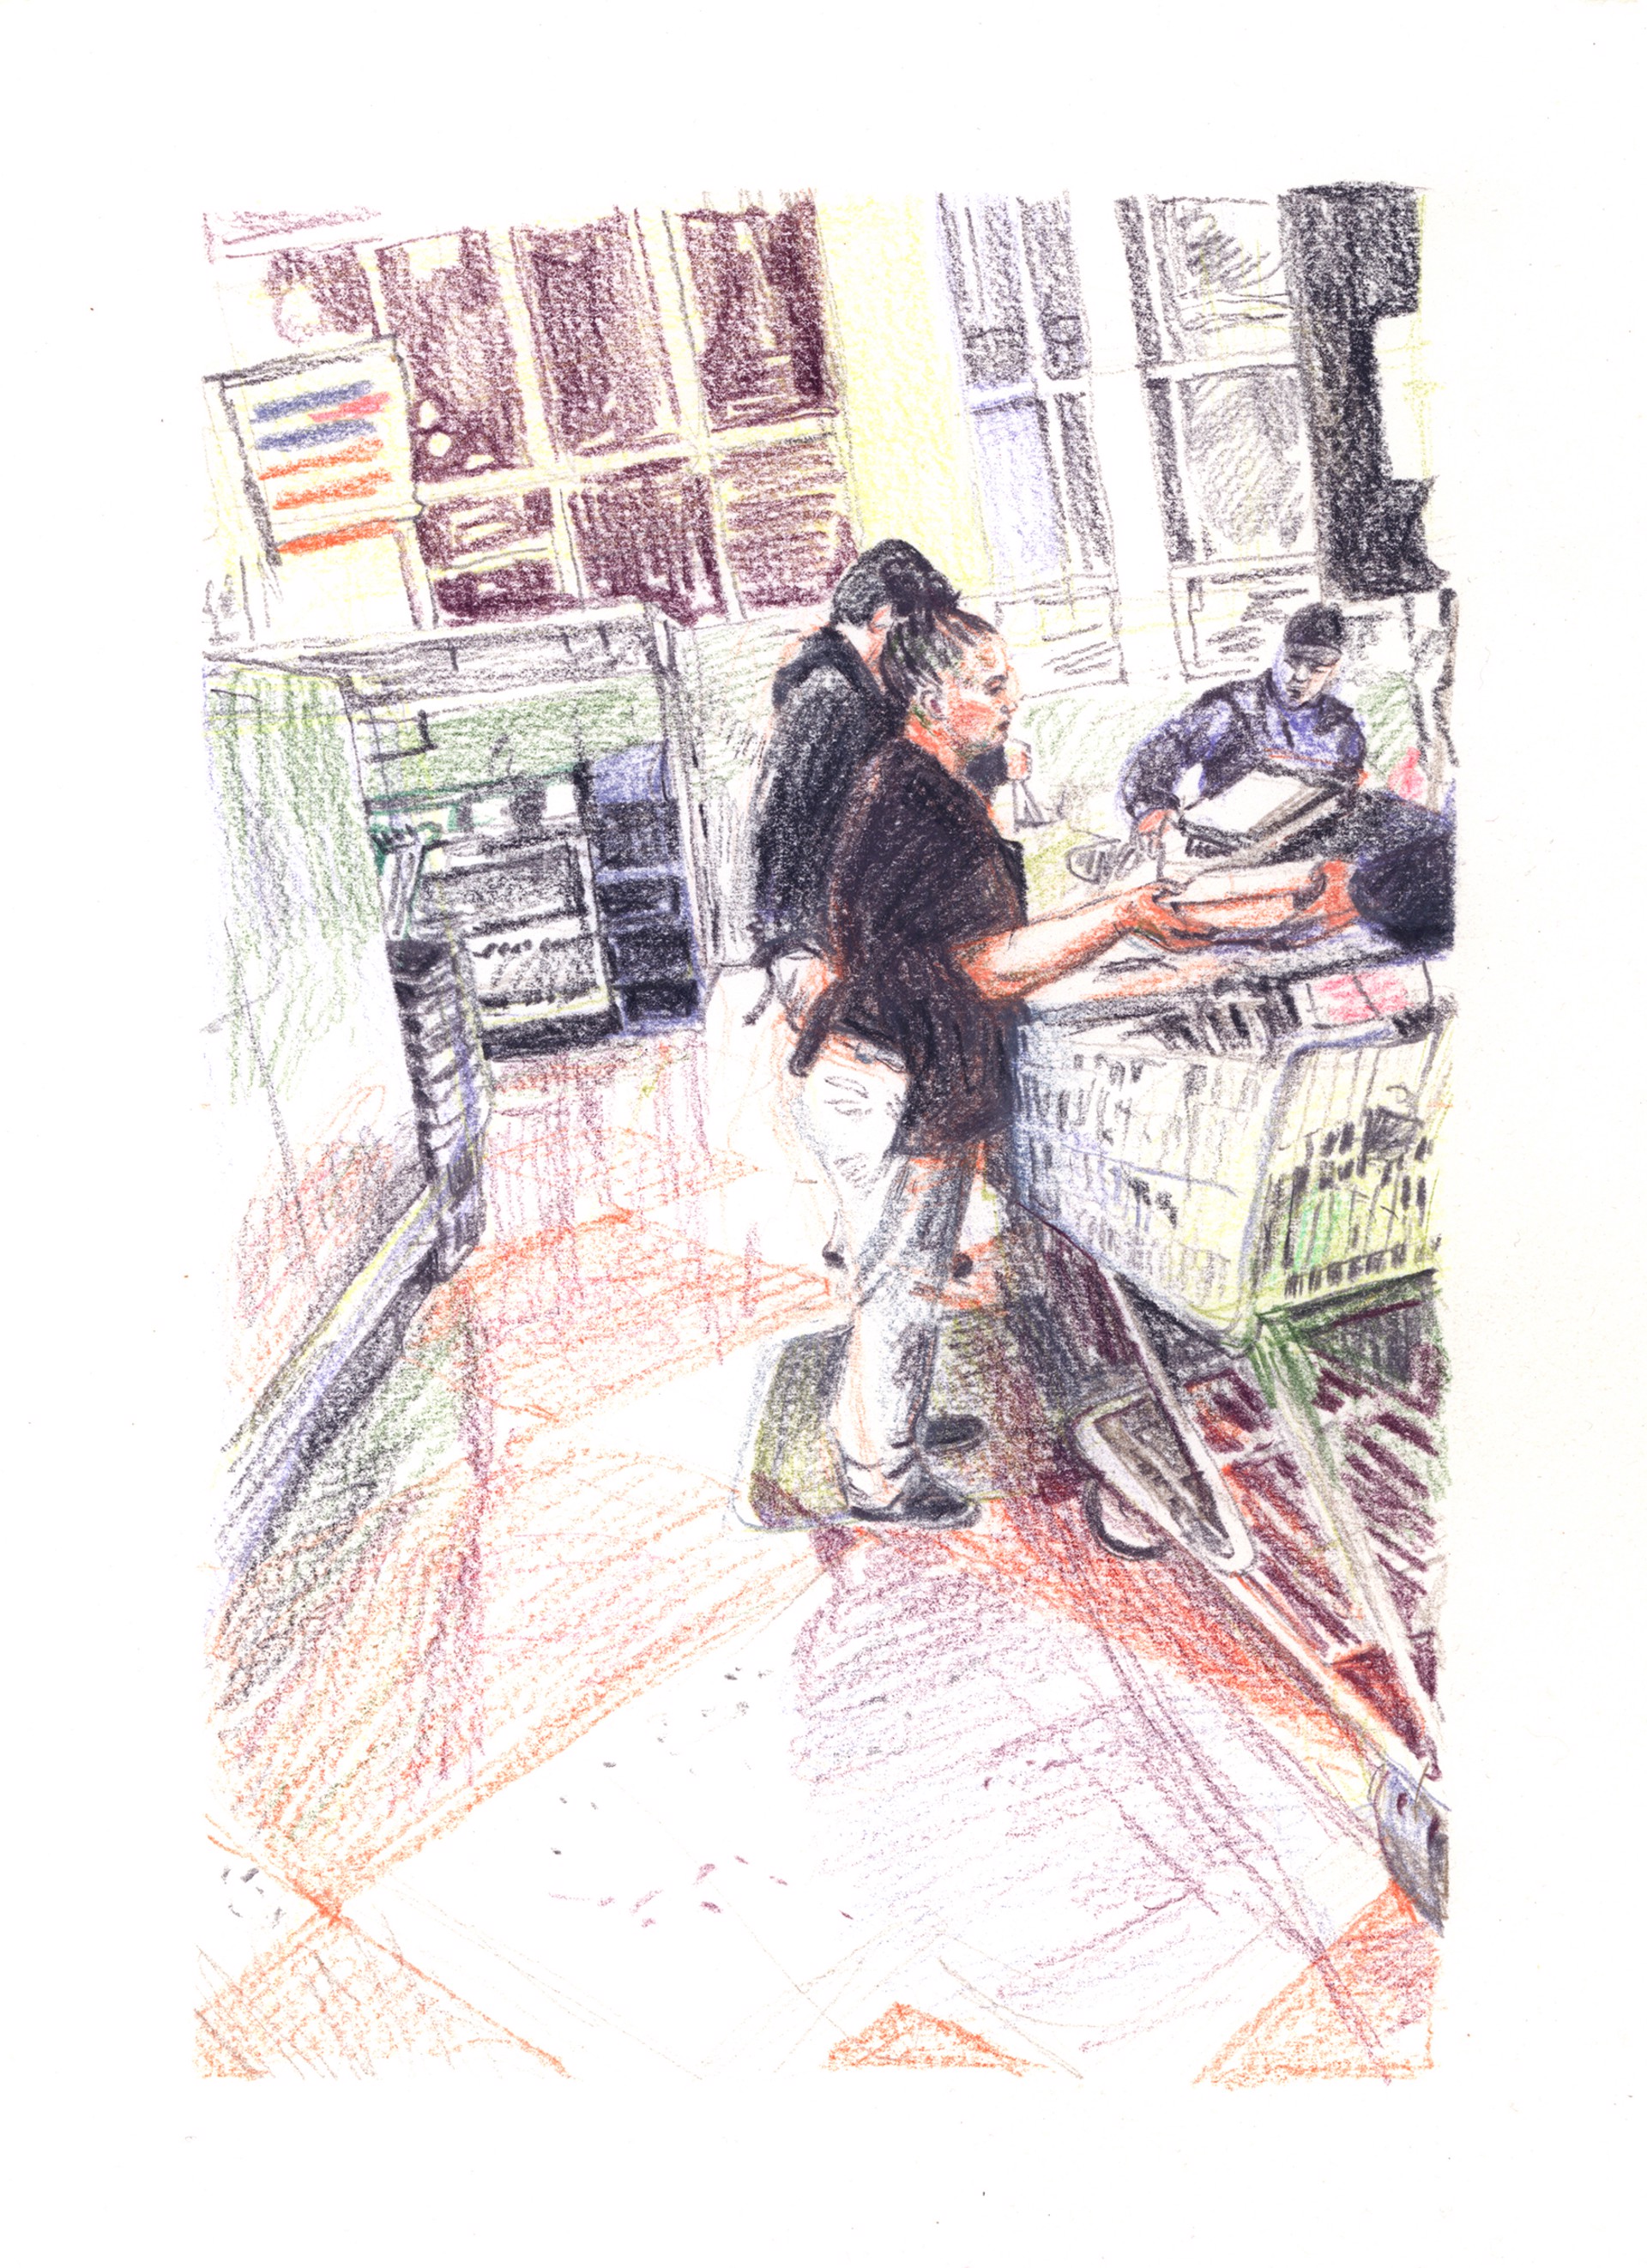 Marketplace/Cashier #22 by Eilis Crean